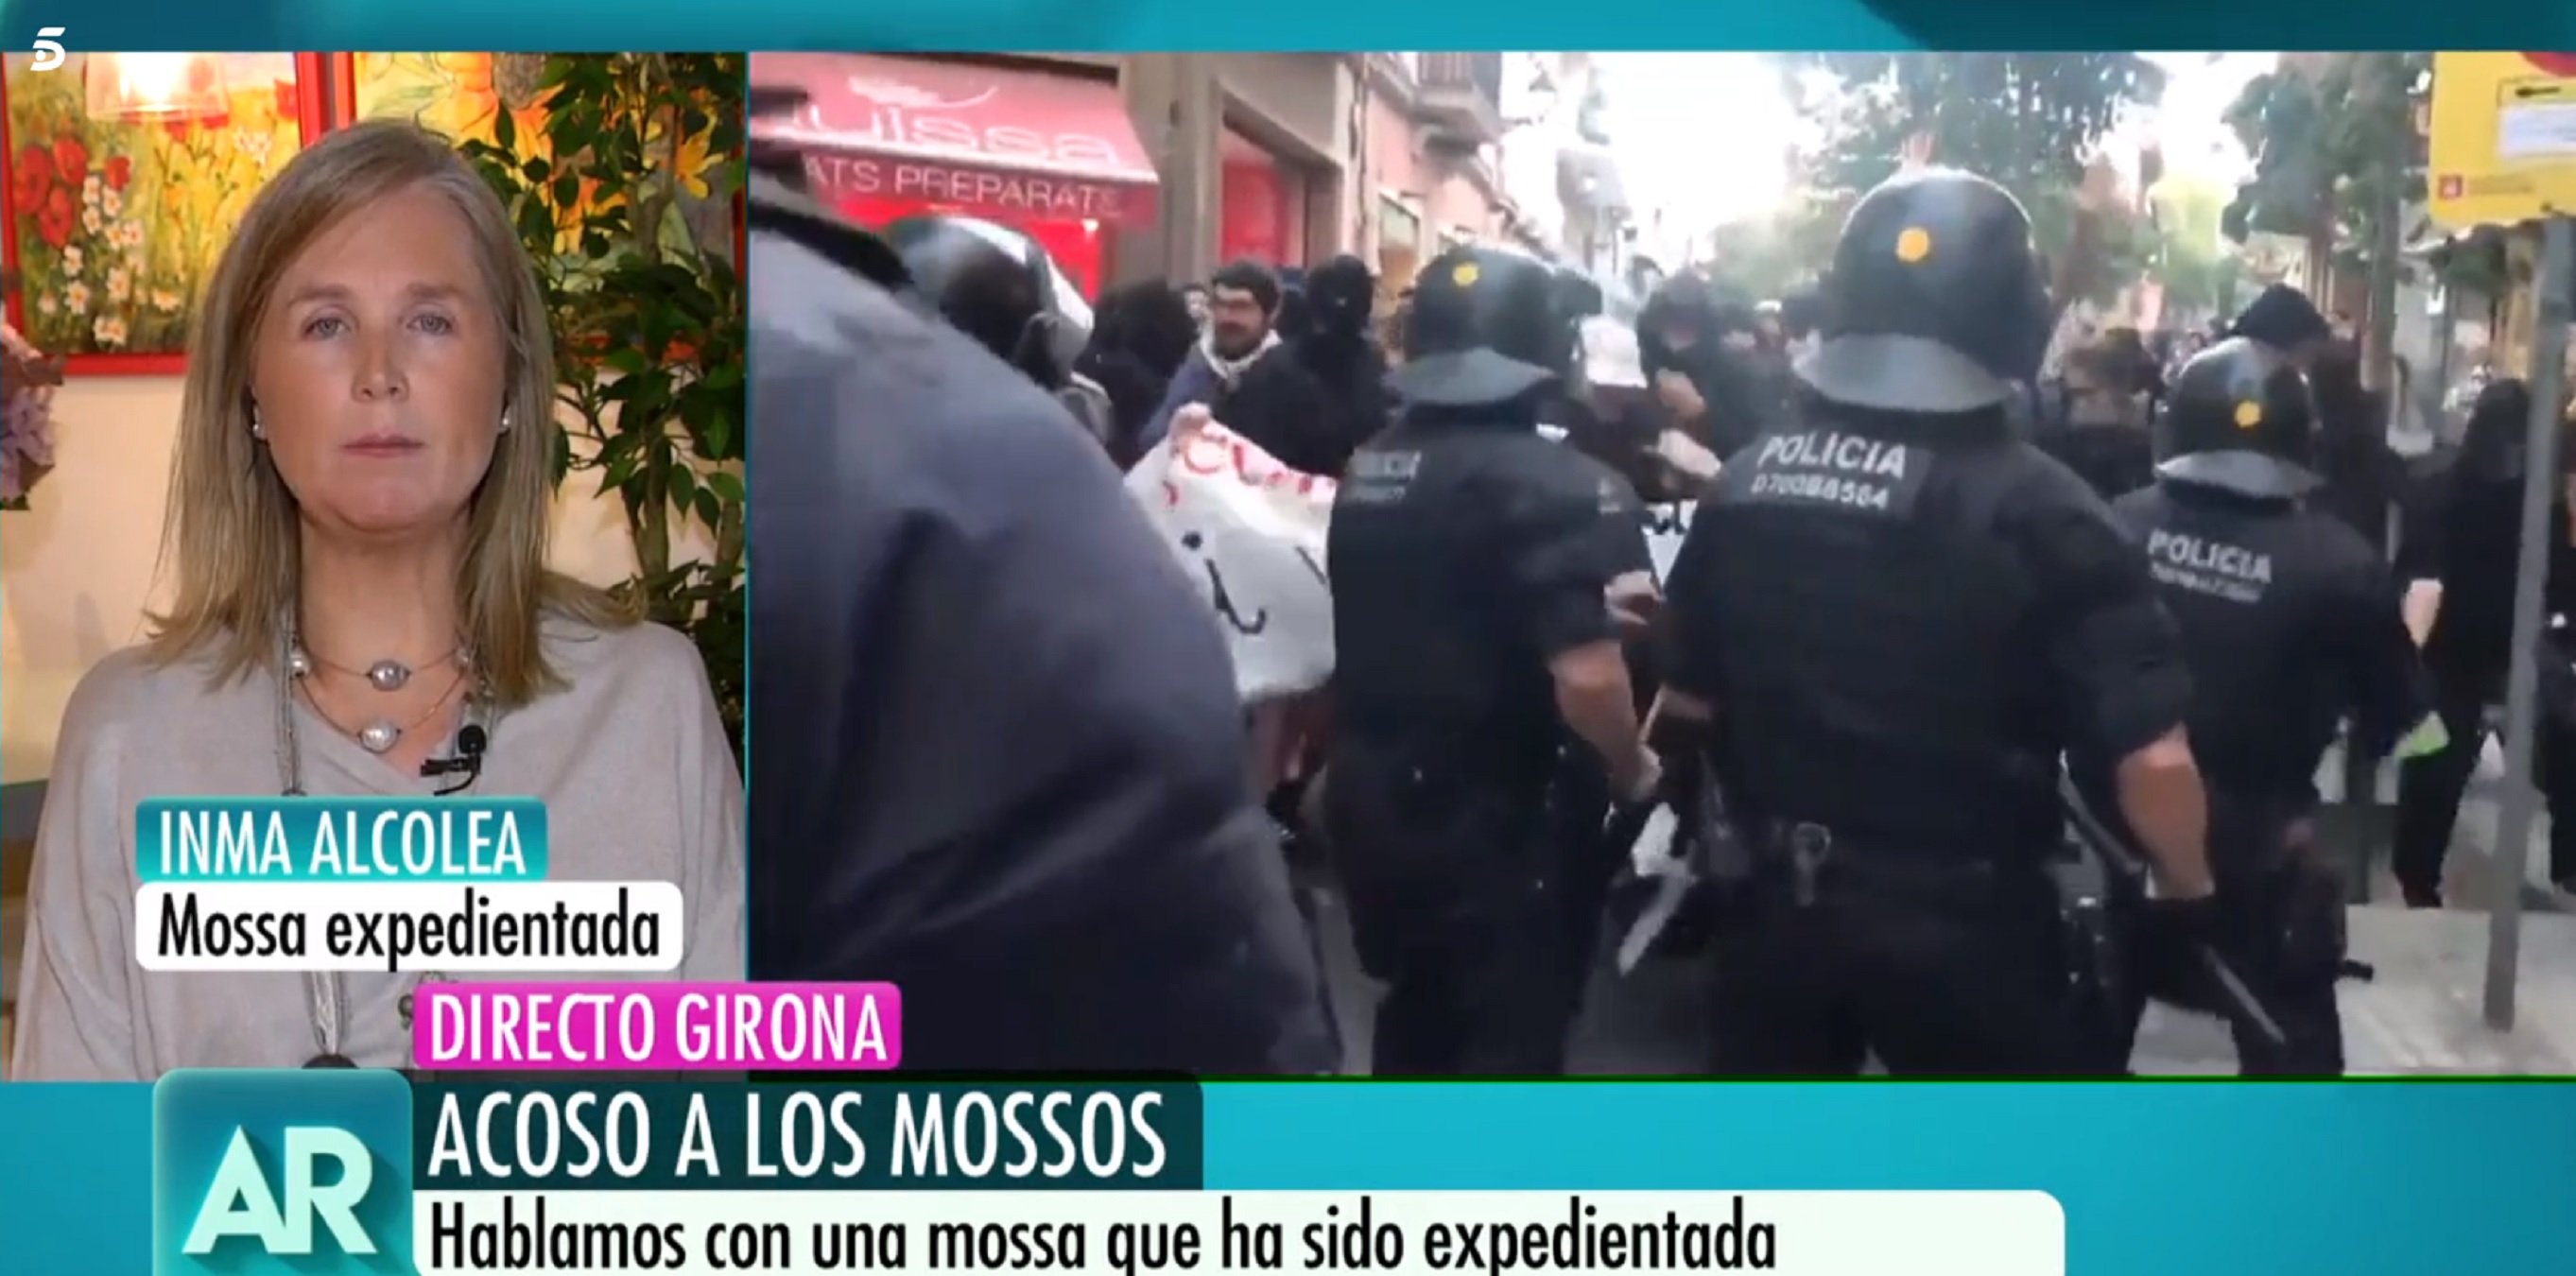 La justicia anula la sanción impuesta a una cabo espanyolista de los Mossos